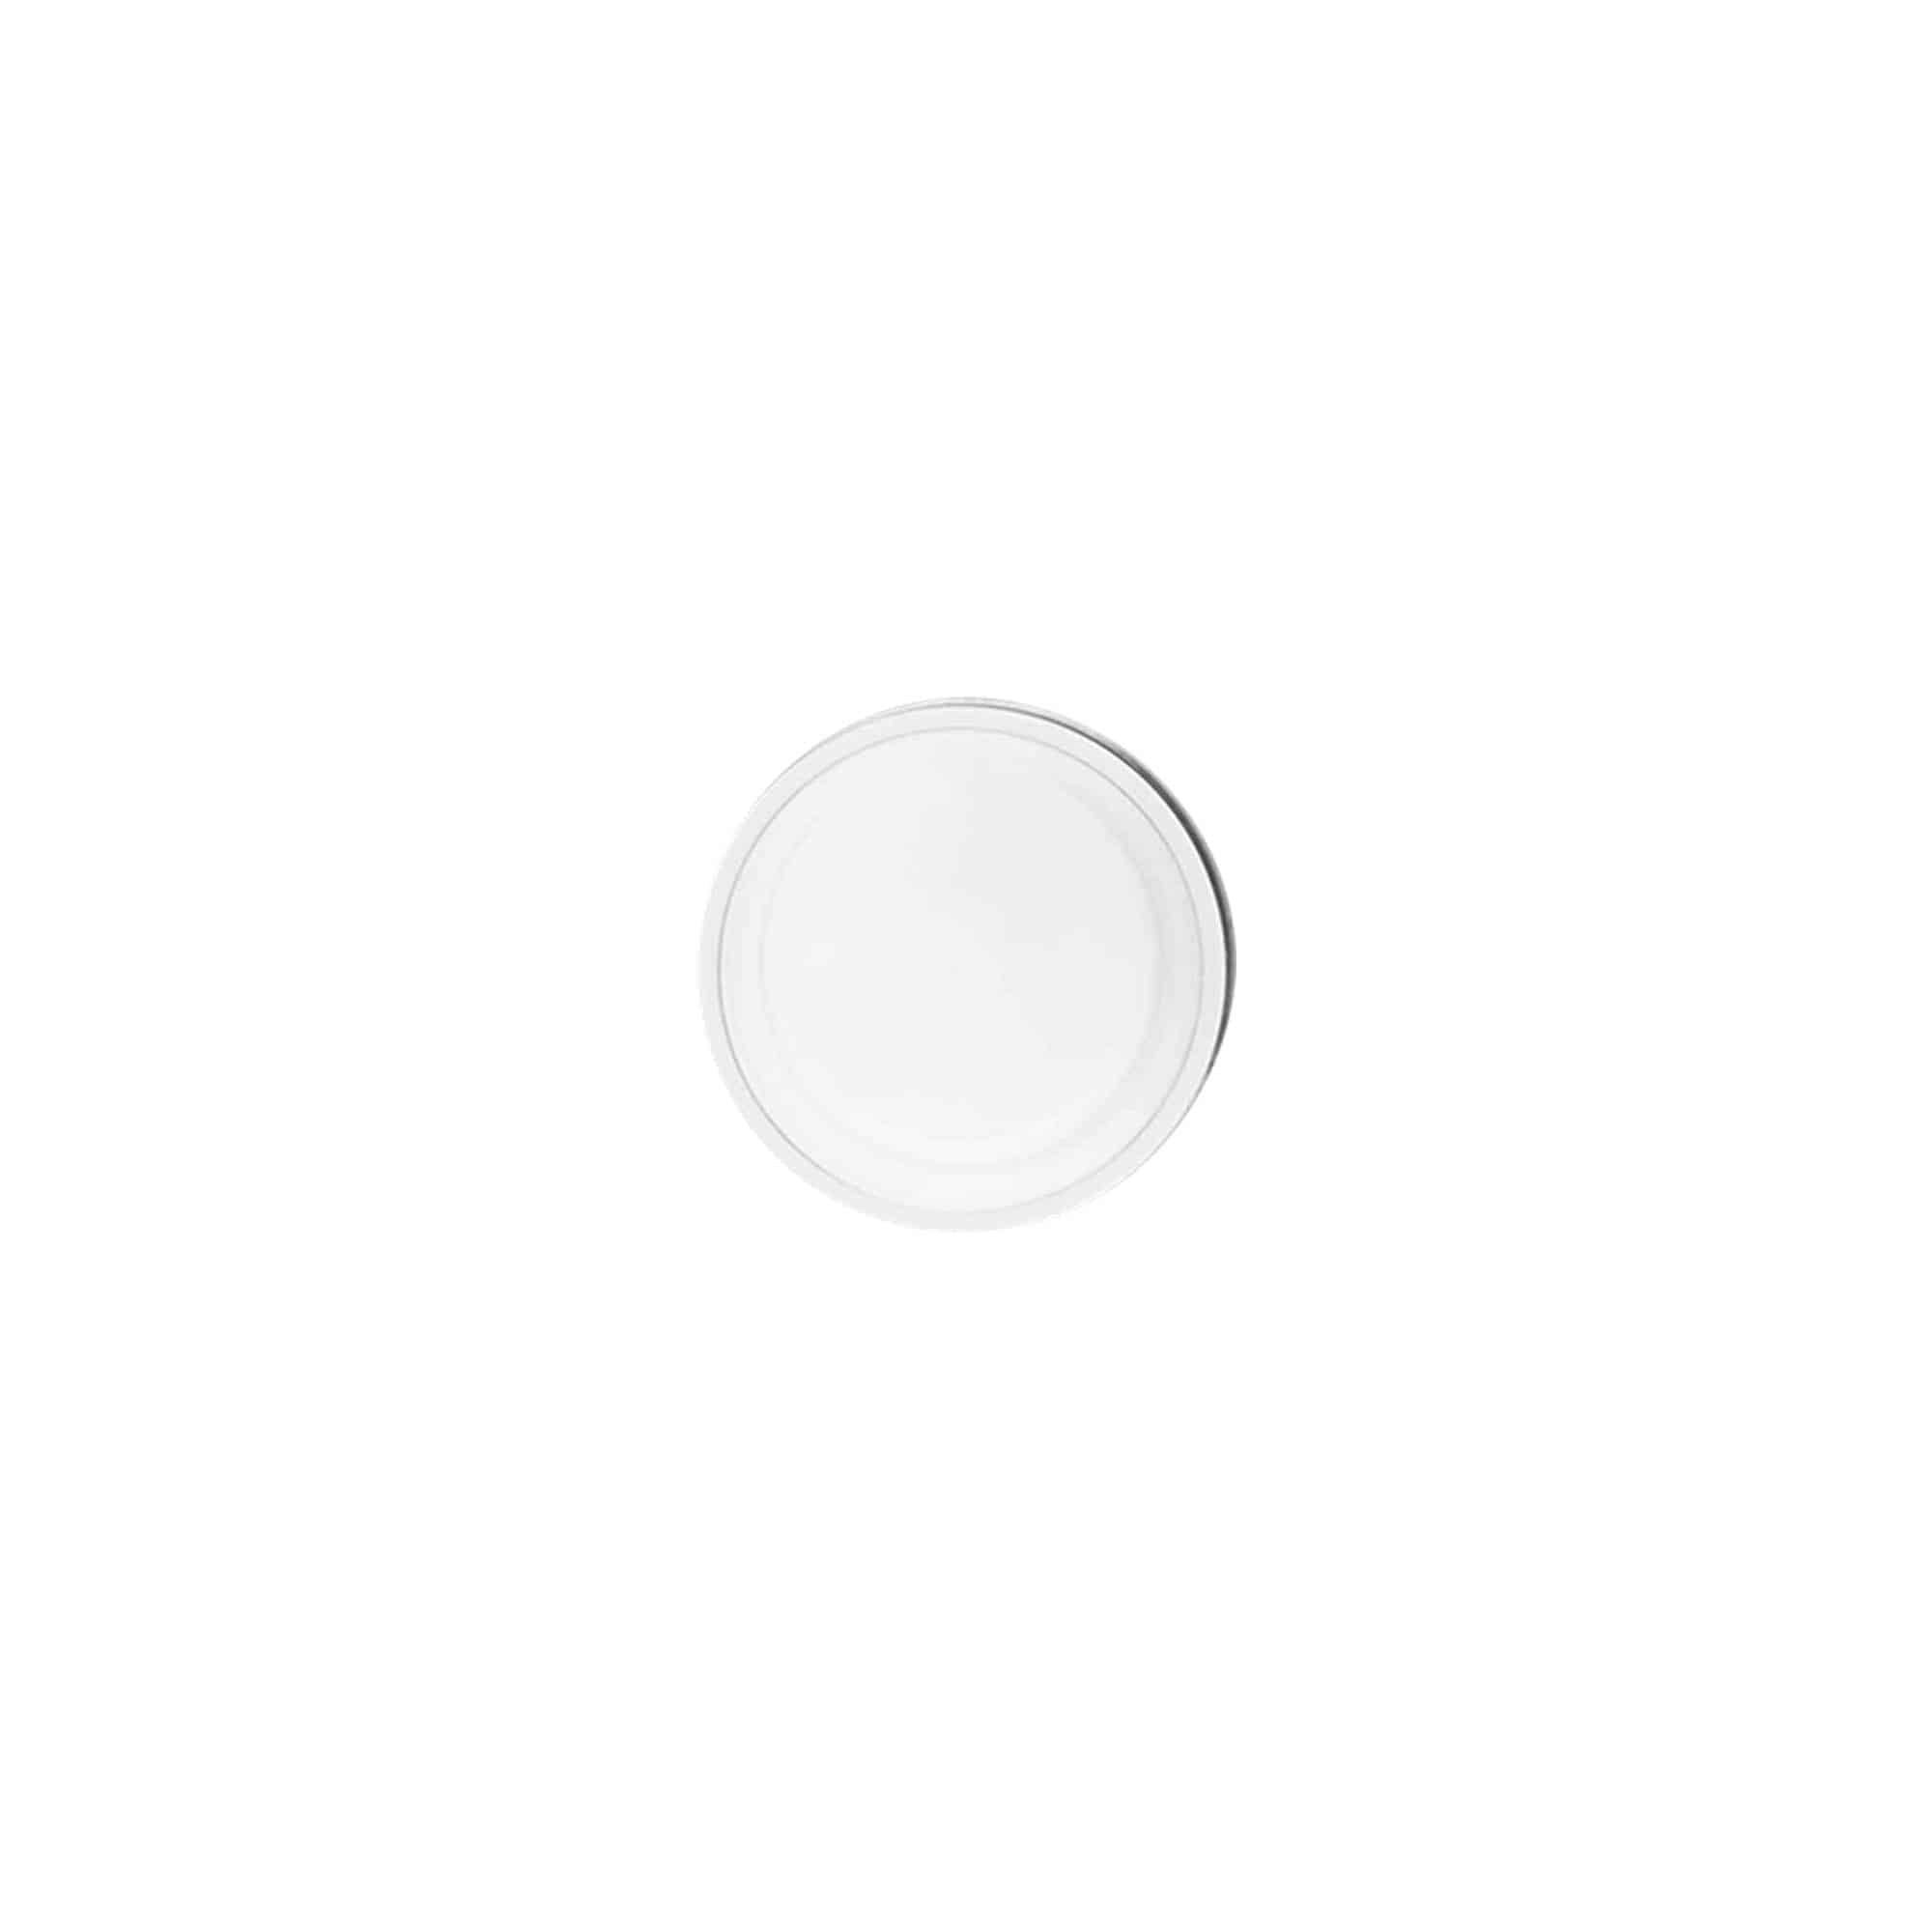 Dozownik airless z pompką 'Nano', tworzywo sztuczne PP, kolor biały